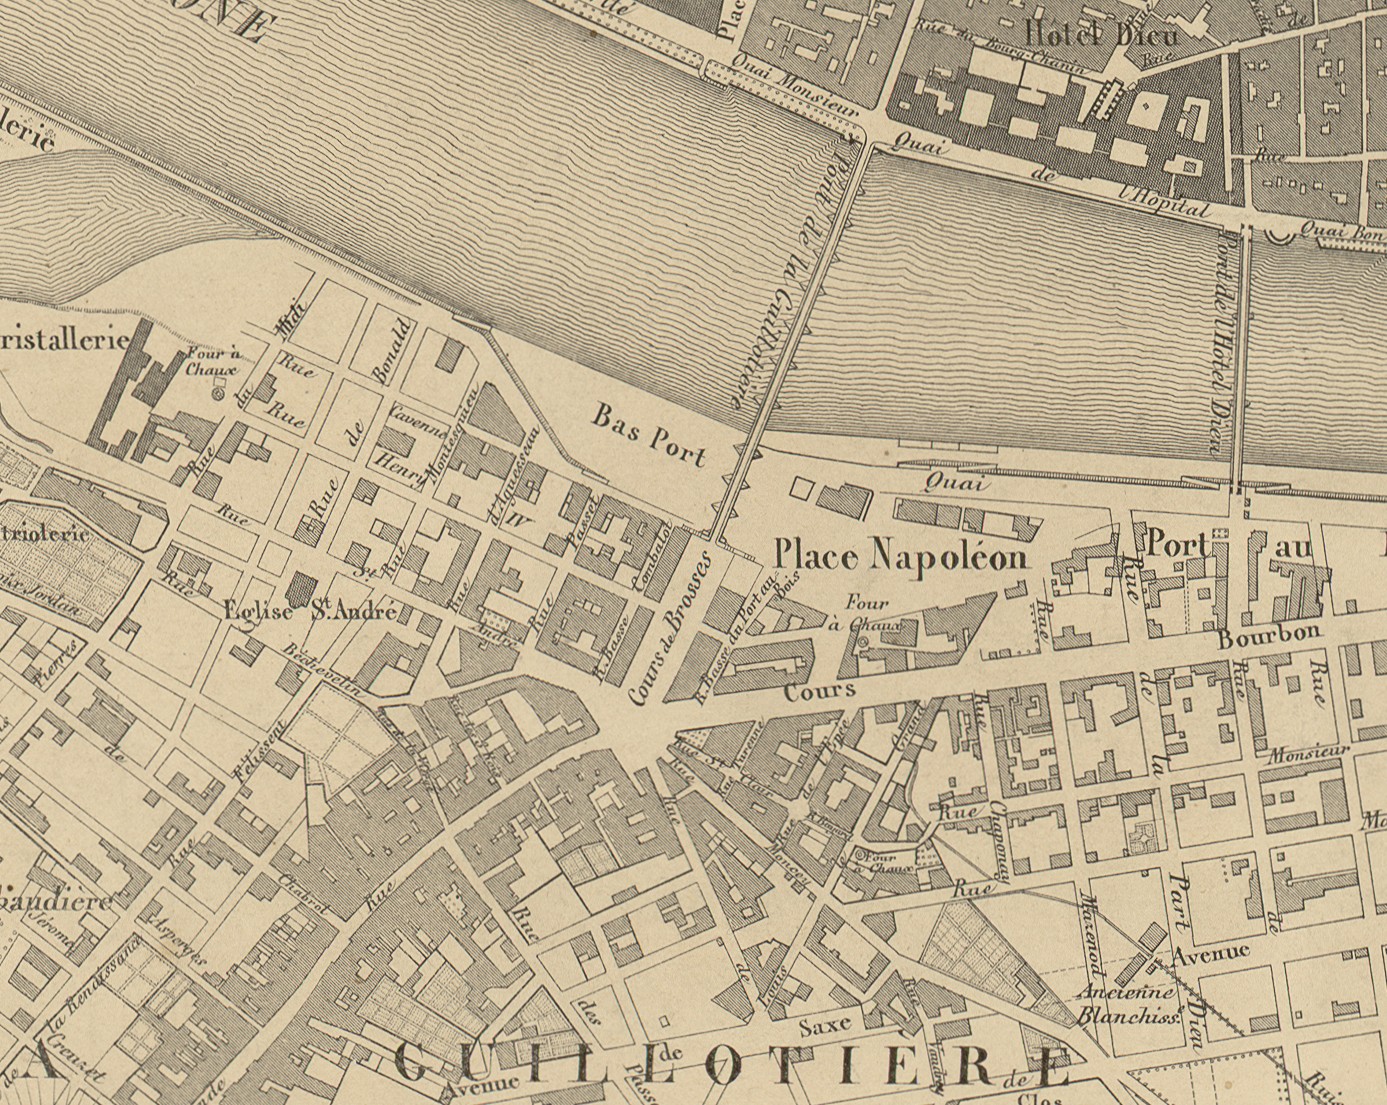 Plan topographique de la Ville de Lyon et ses environs : estampe NB par Dignoscyo et Rembielinski (1847, cote : 2S/574, détail)